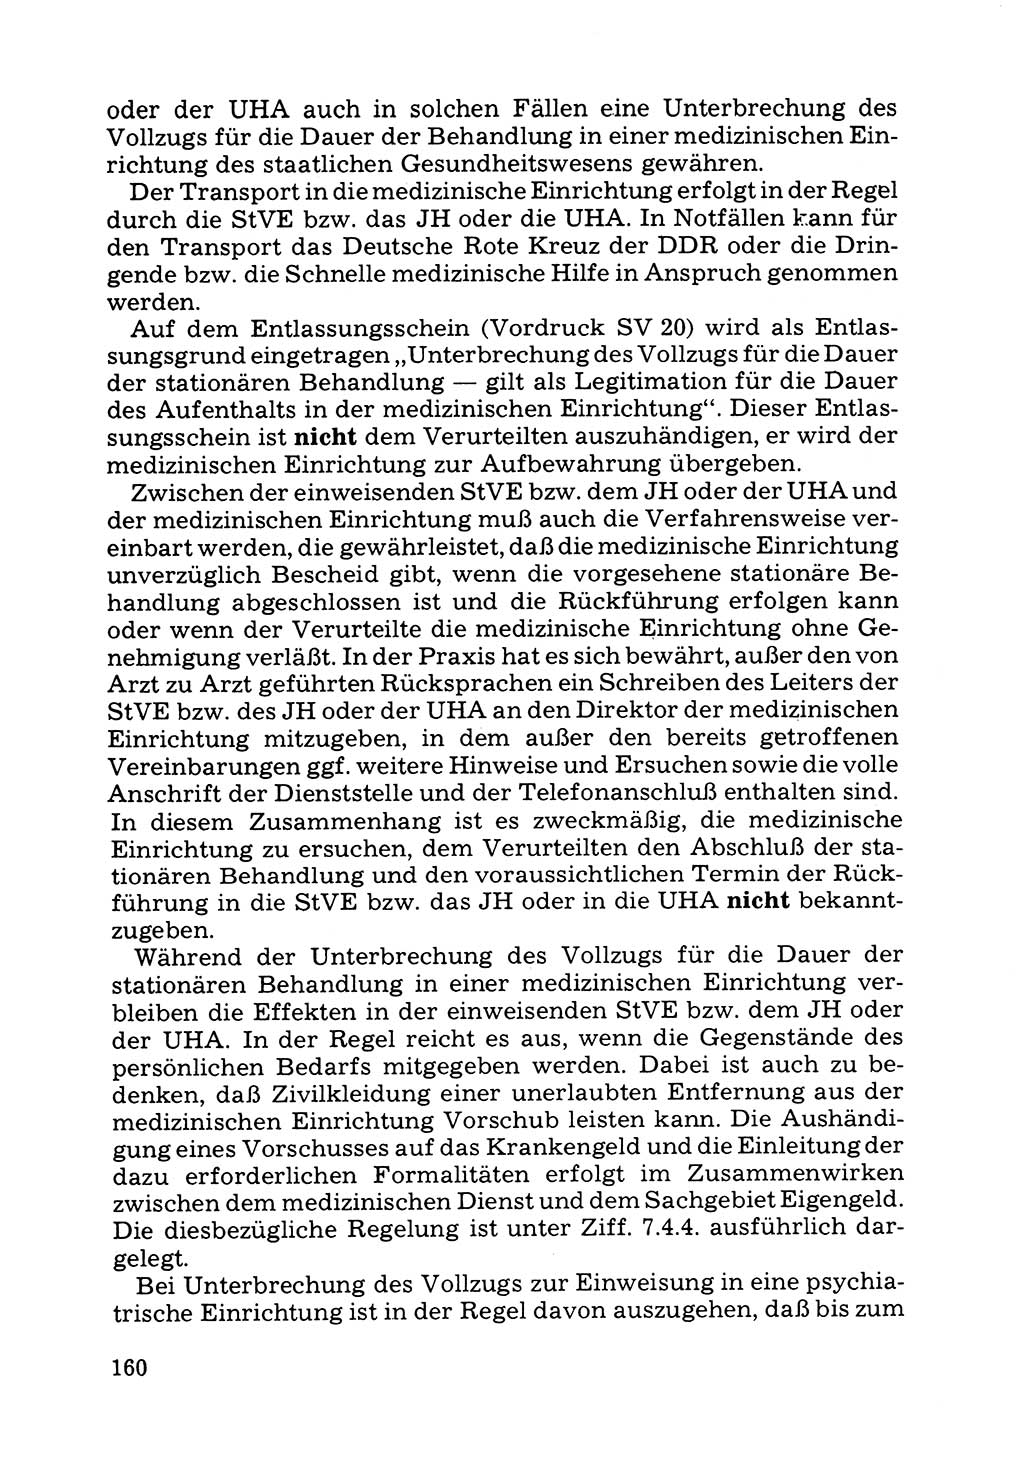 Verwaltungsmäßige Aufgaben beim Vollzug der Untersuchungshaft (U-Haft) sowie der Strafen mit Freiheitsentzug (SV) [Deutsche Demokratische Republik (DDR)] 1980, Seite 160 (Aufg. Vollz. U-Haft SV DDR 1980, S. 160)